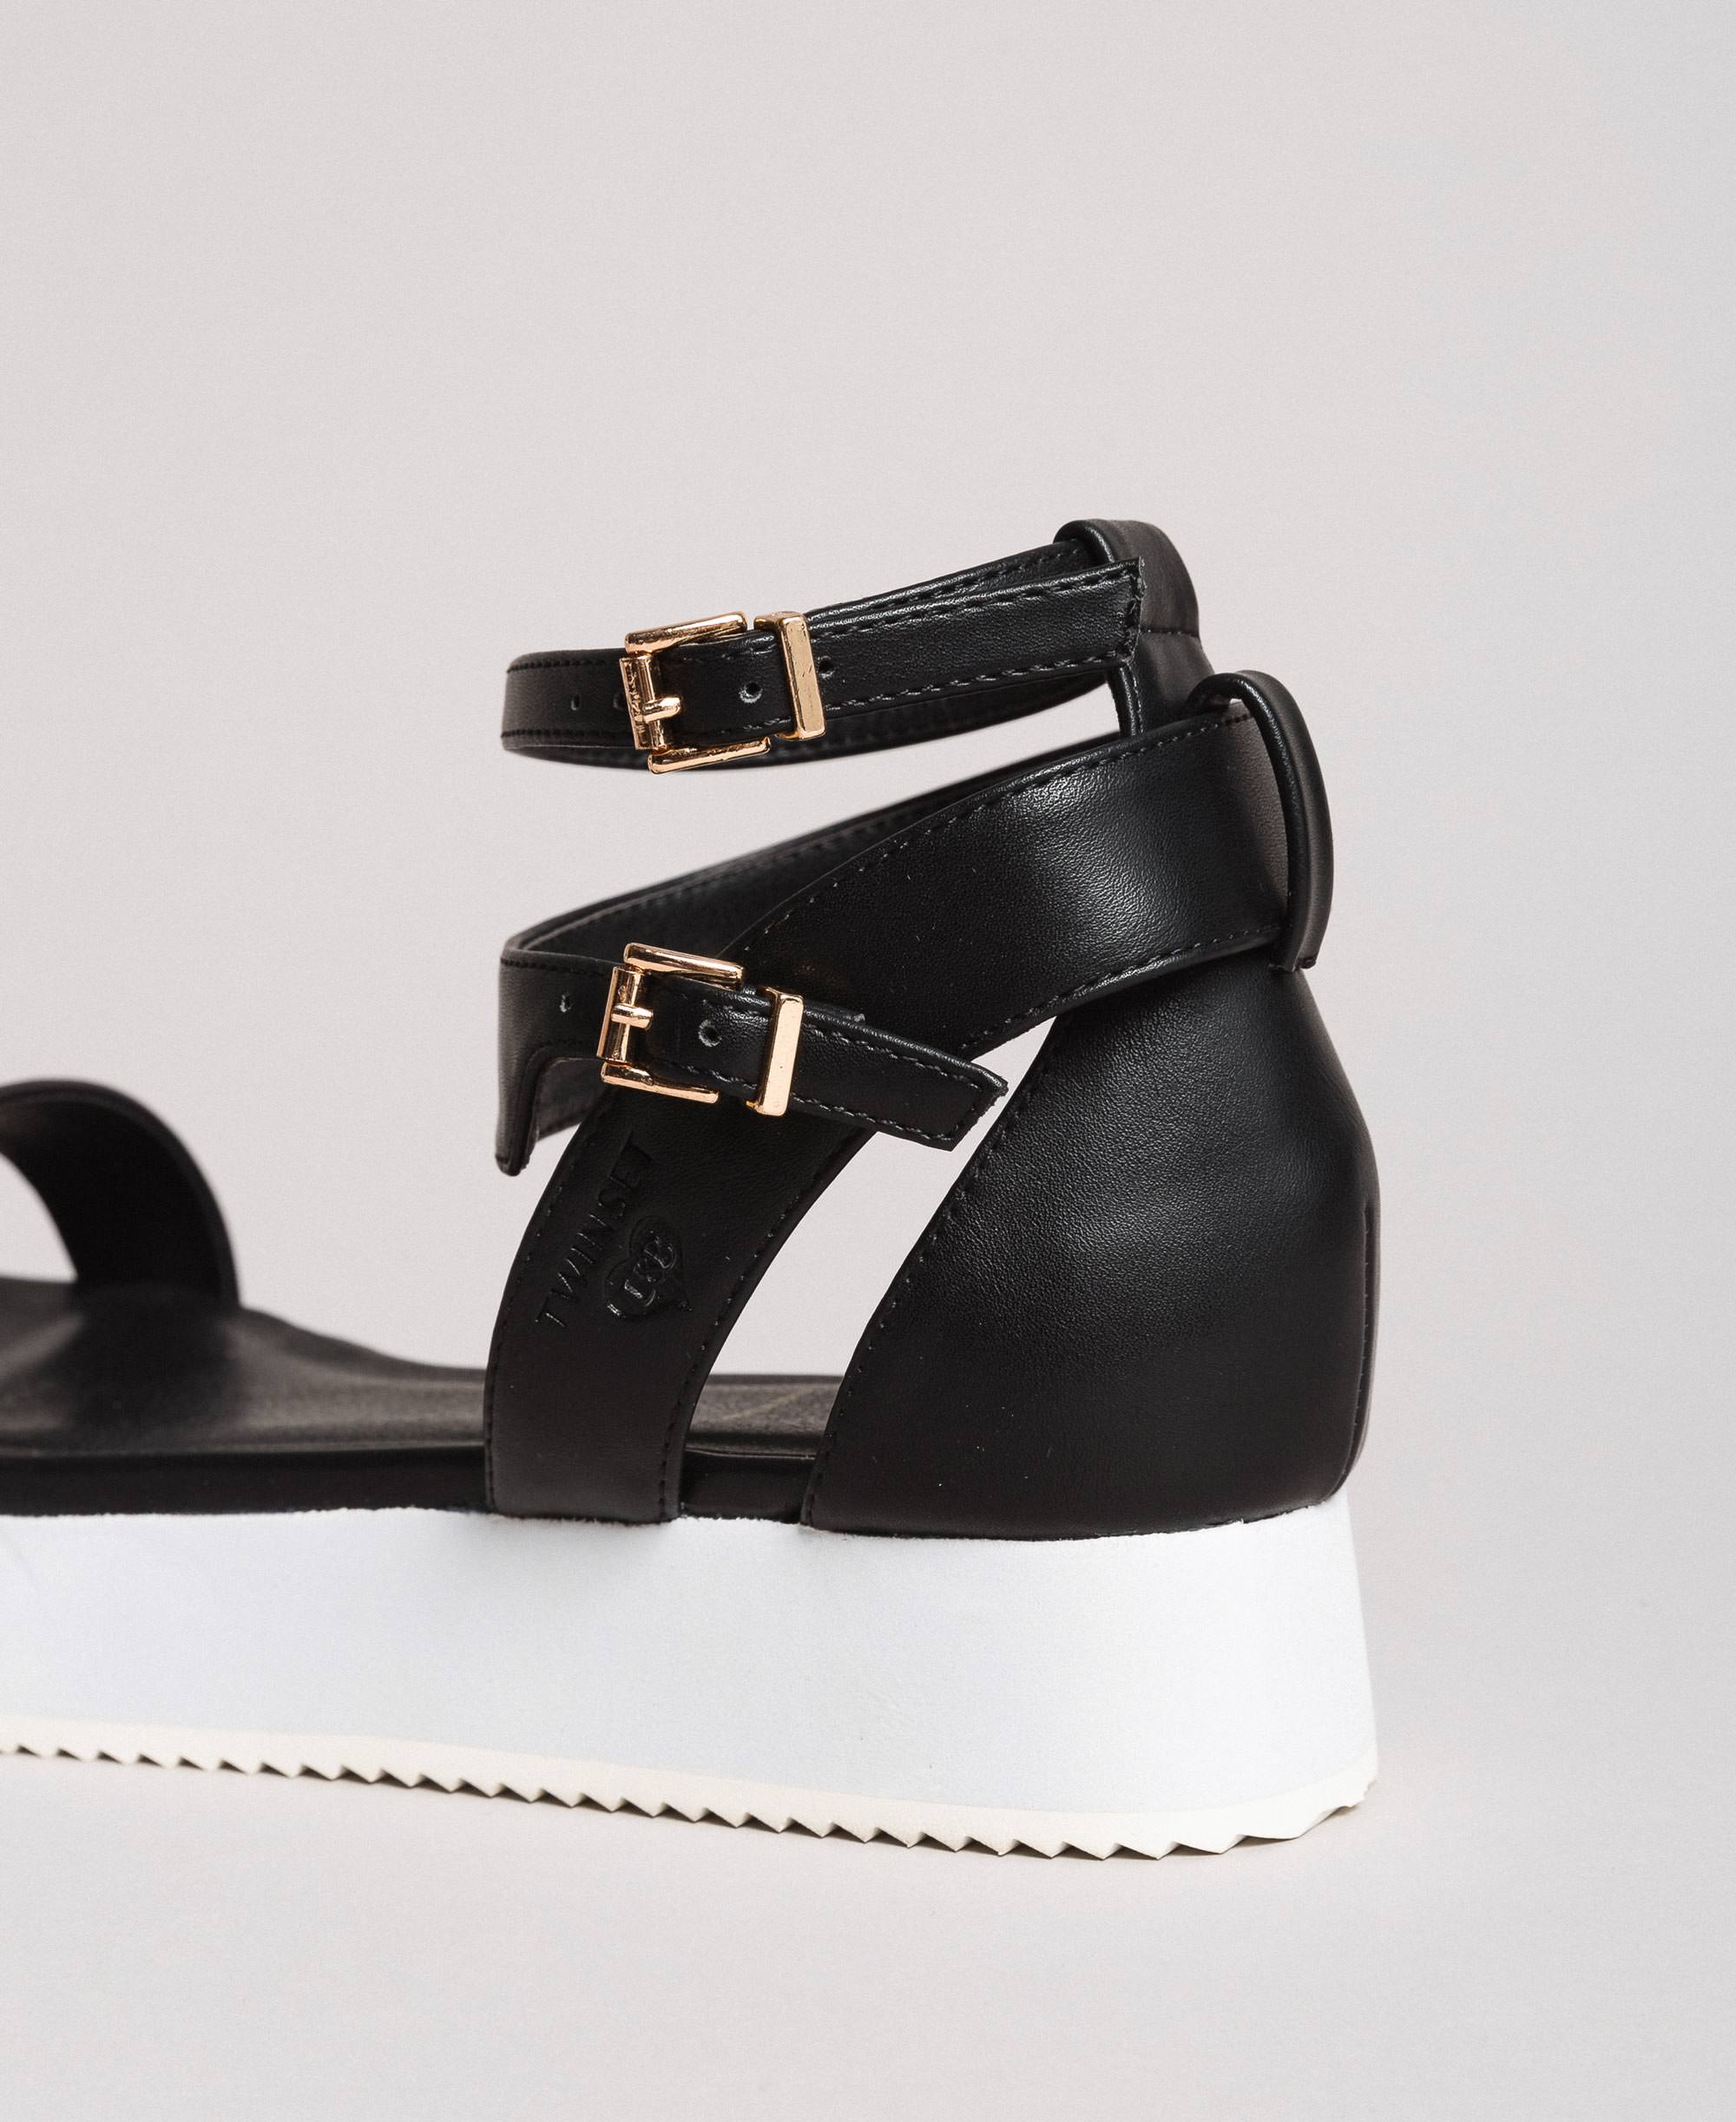 black double strap platform sandals